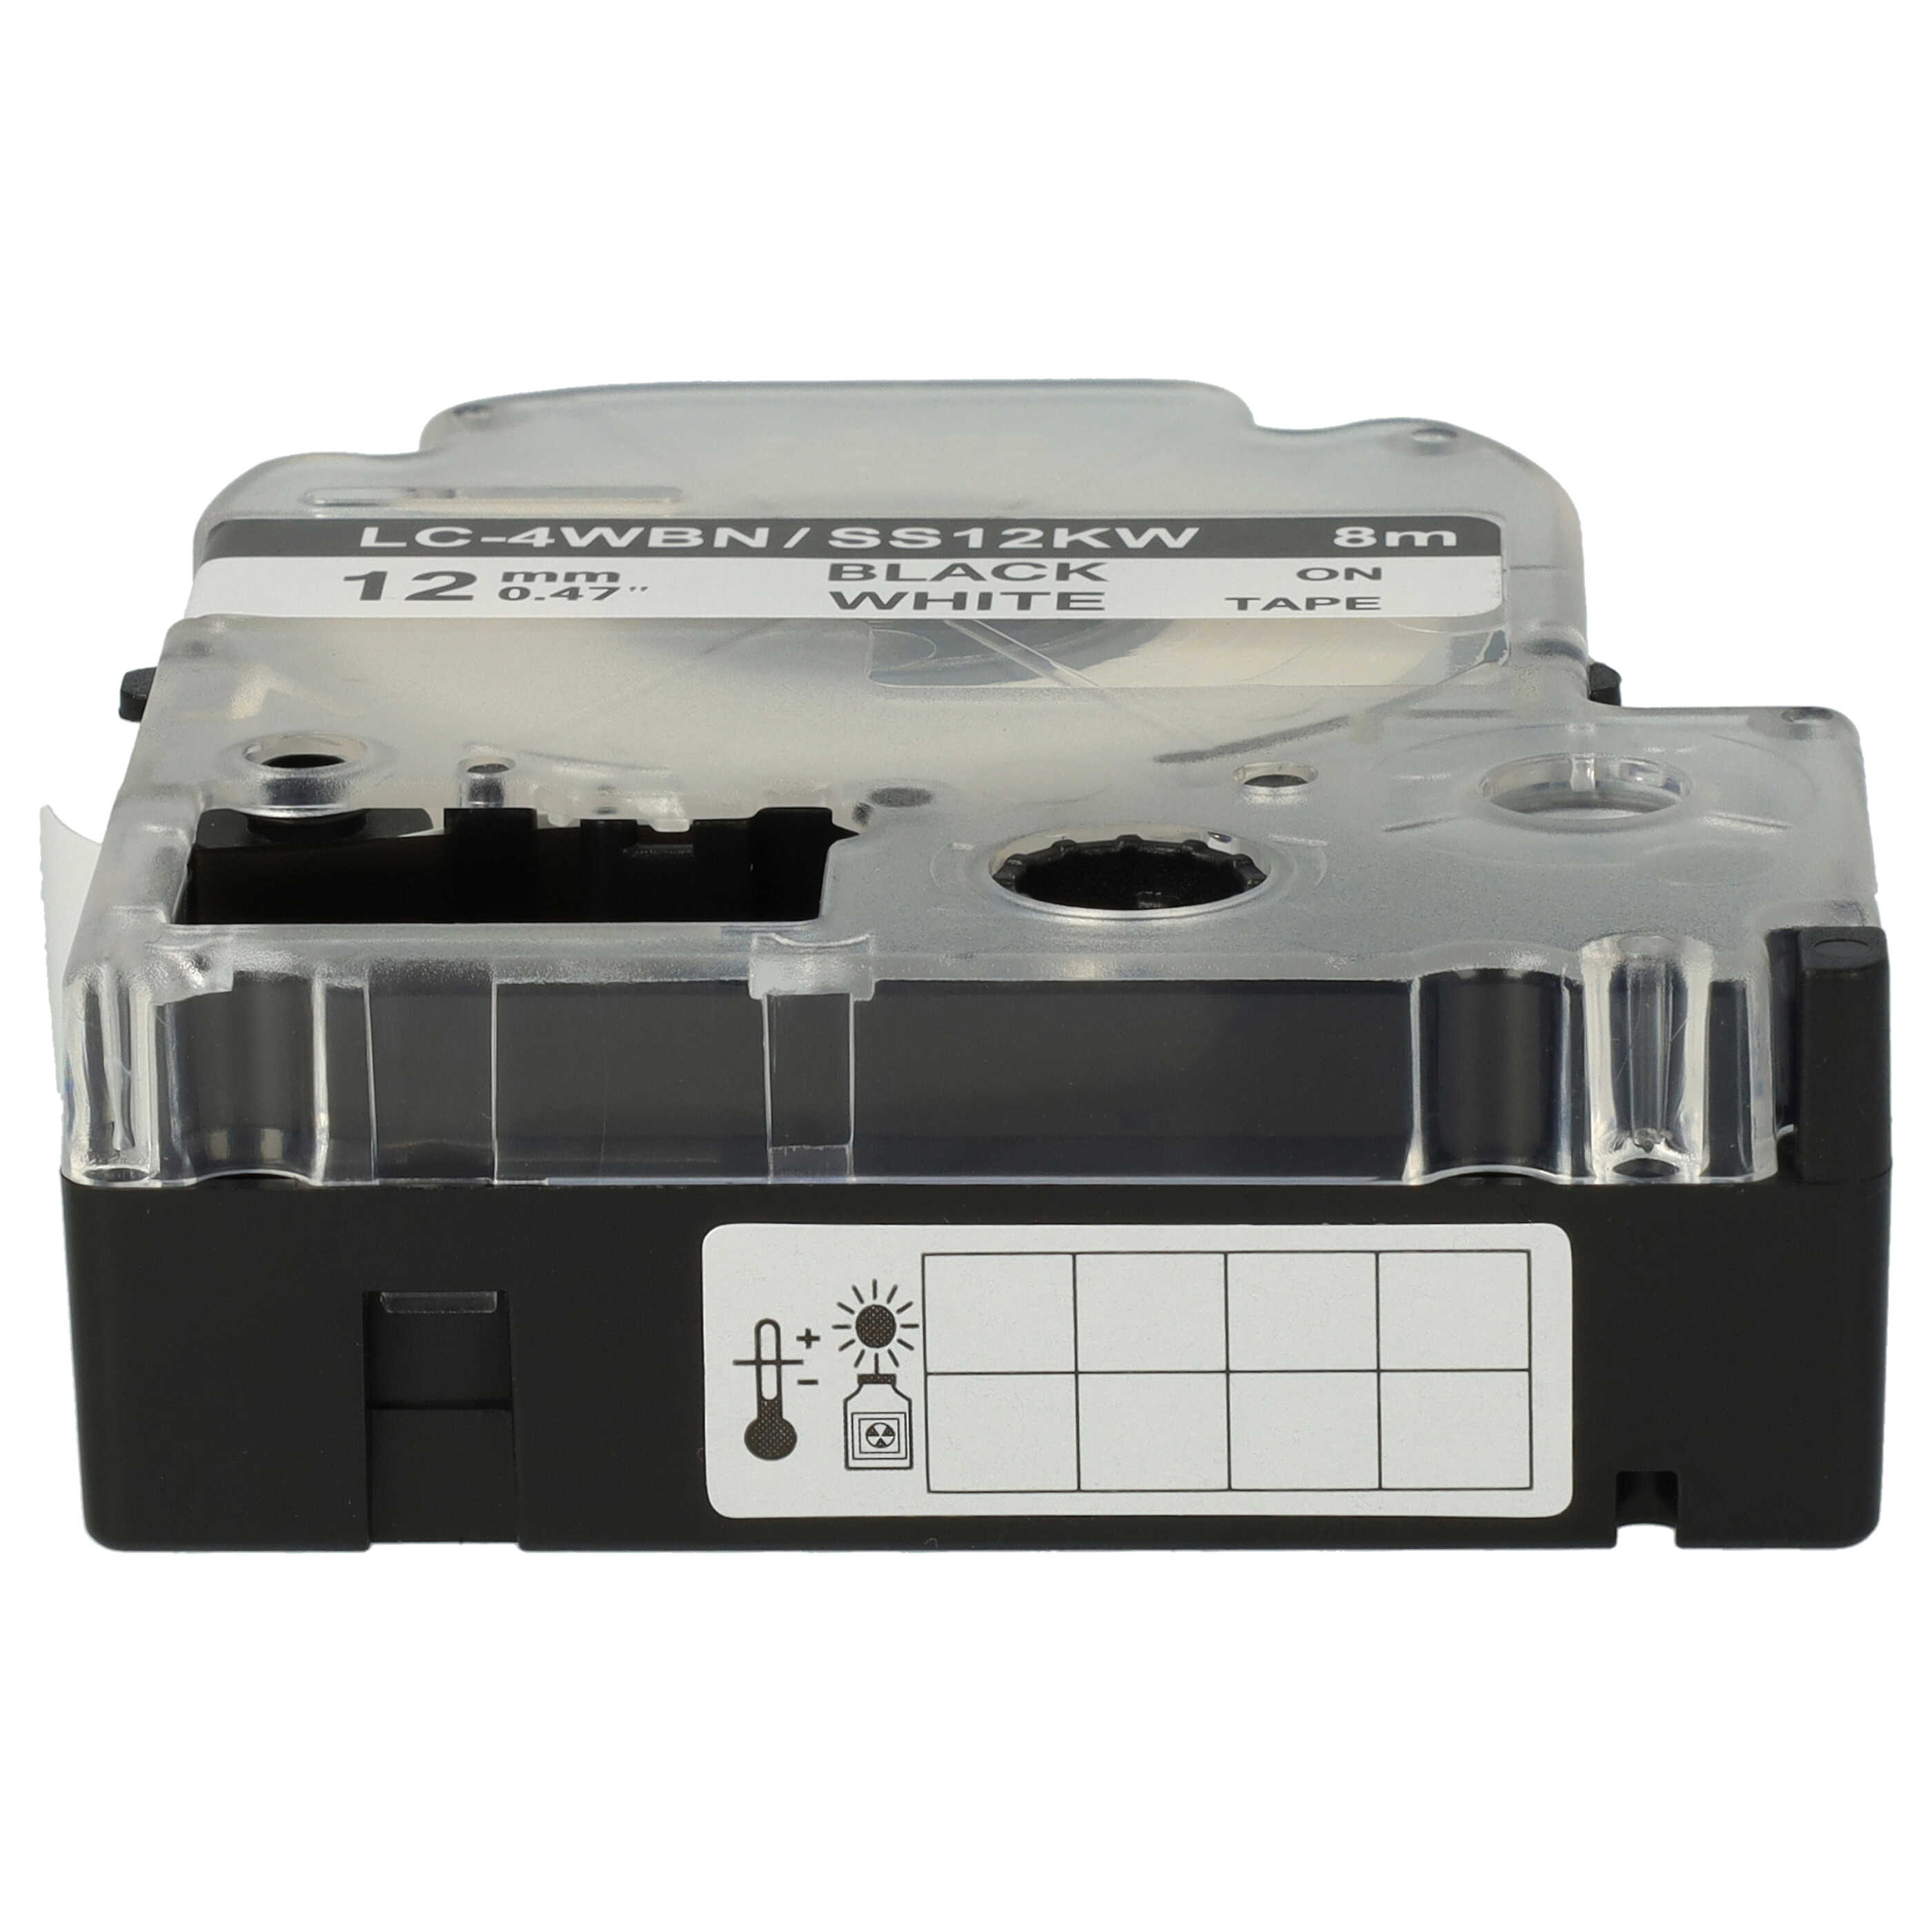 Schriftband als Ersatz für Epson LC-4WBN - 12mm Schwarz auf Weiß